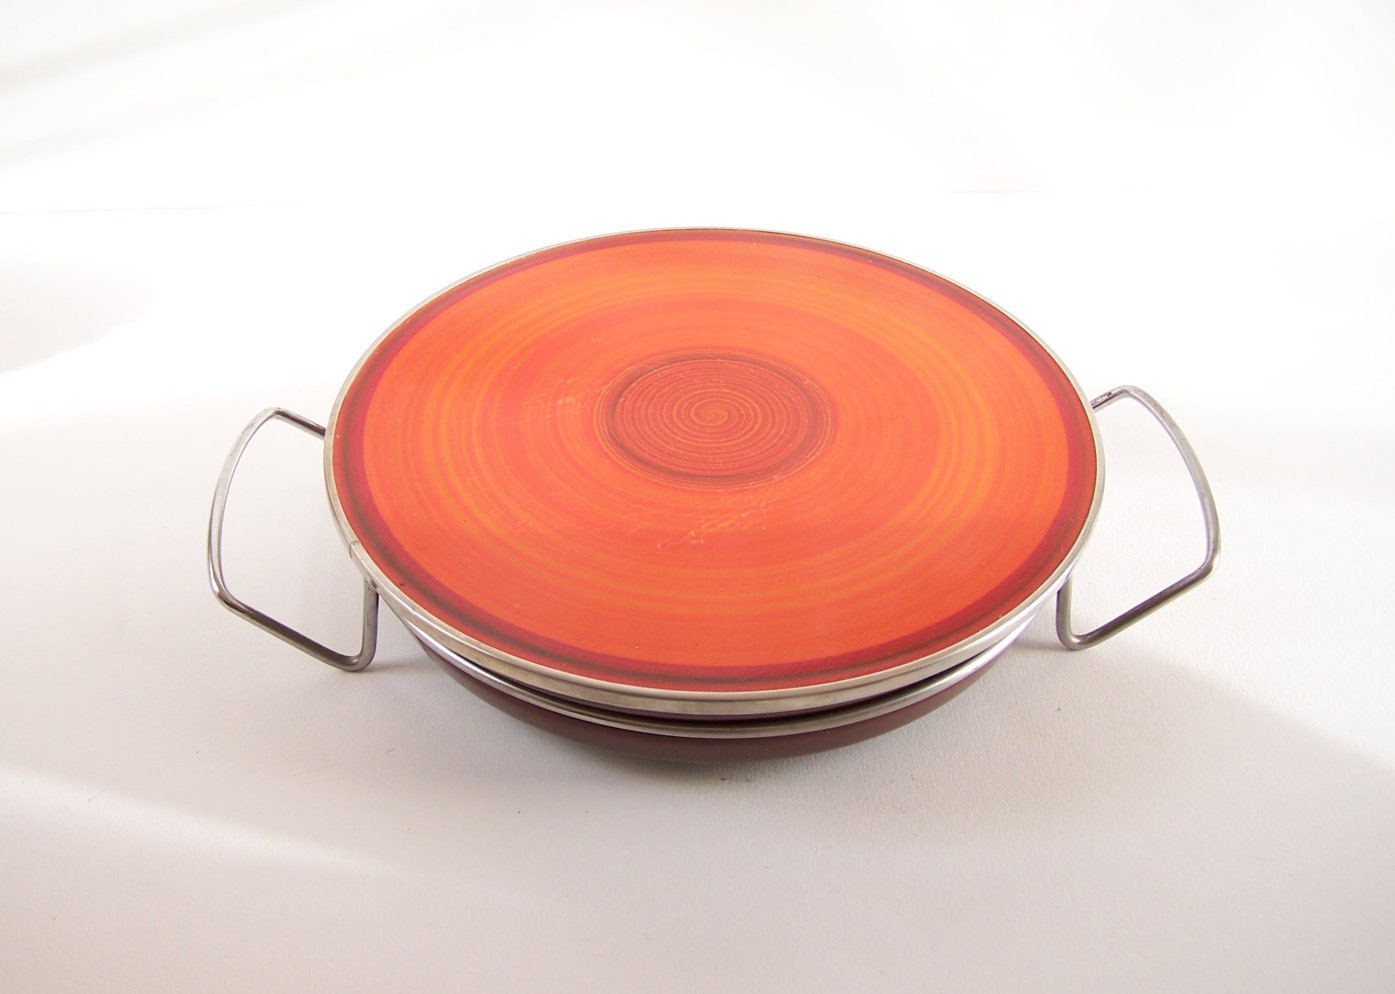 Chauffe-Plats Orange Thermoplatte Silit Vintage 1970 Allemagne de L'ouest